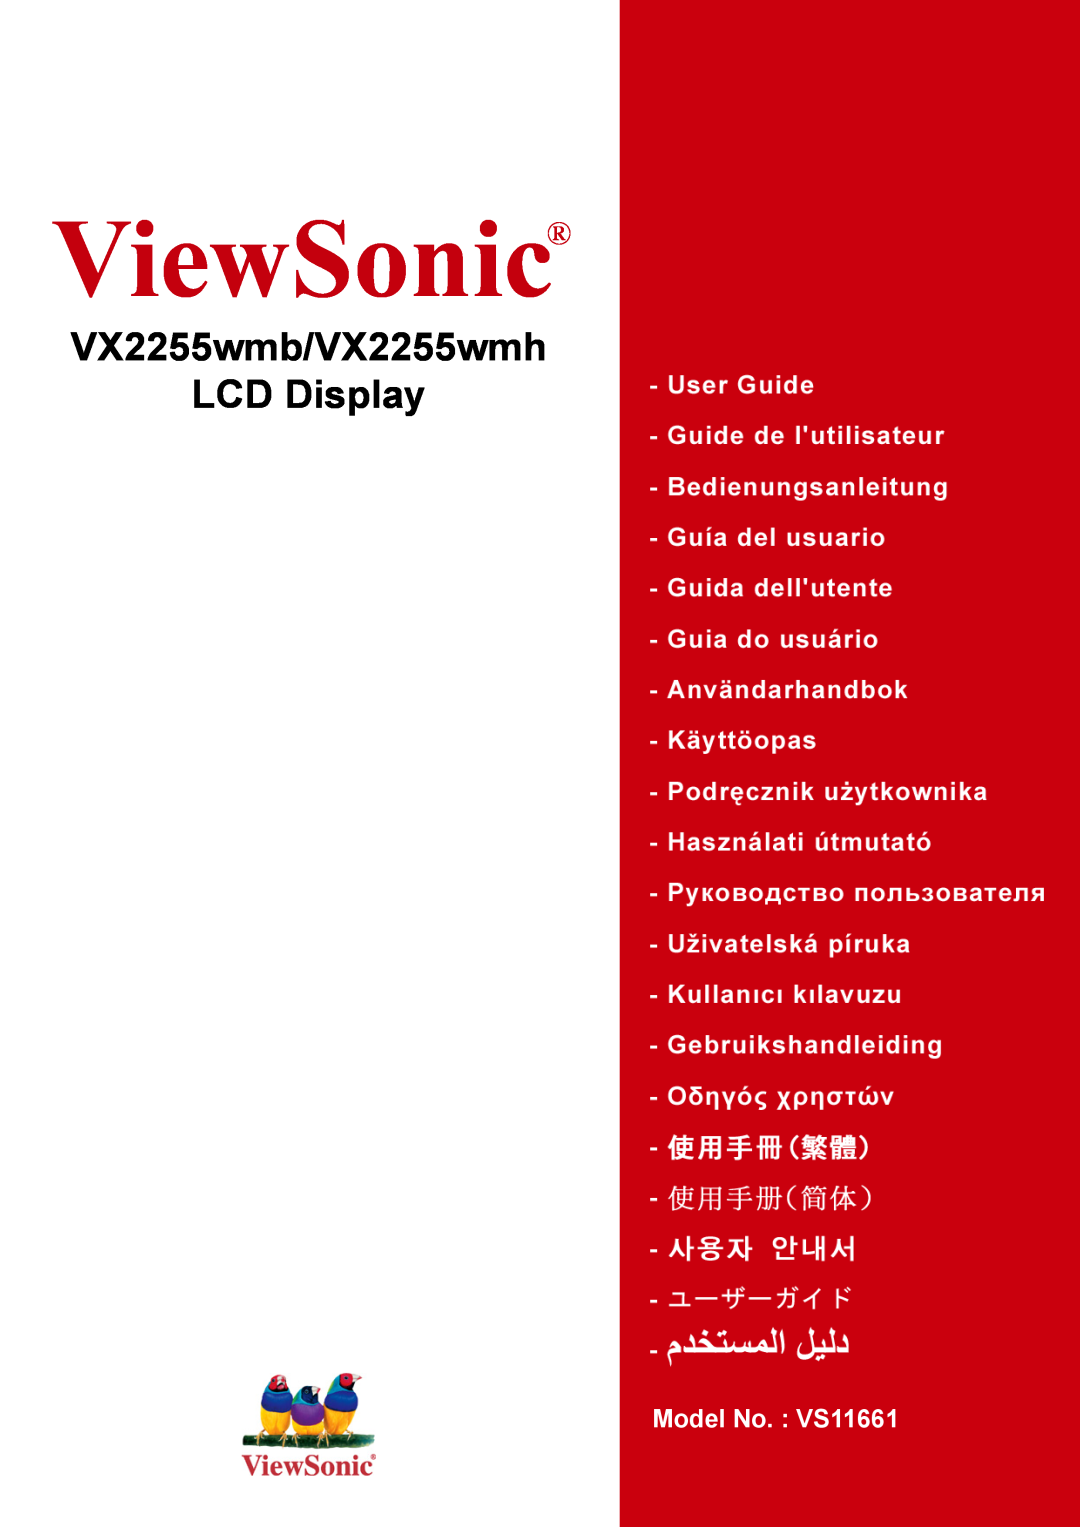 ViewSonic VX2255WMH manual ViewSonic, VX2255wmb/VX2255wmh LCD Display, Model No. VS11661 